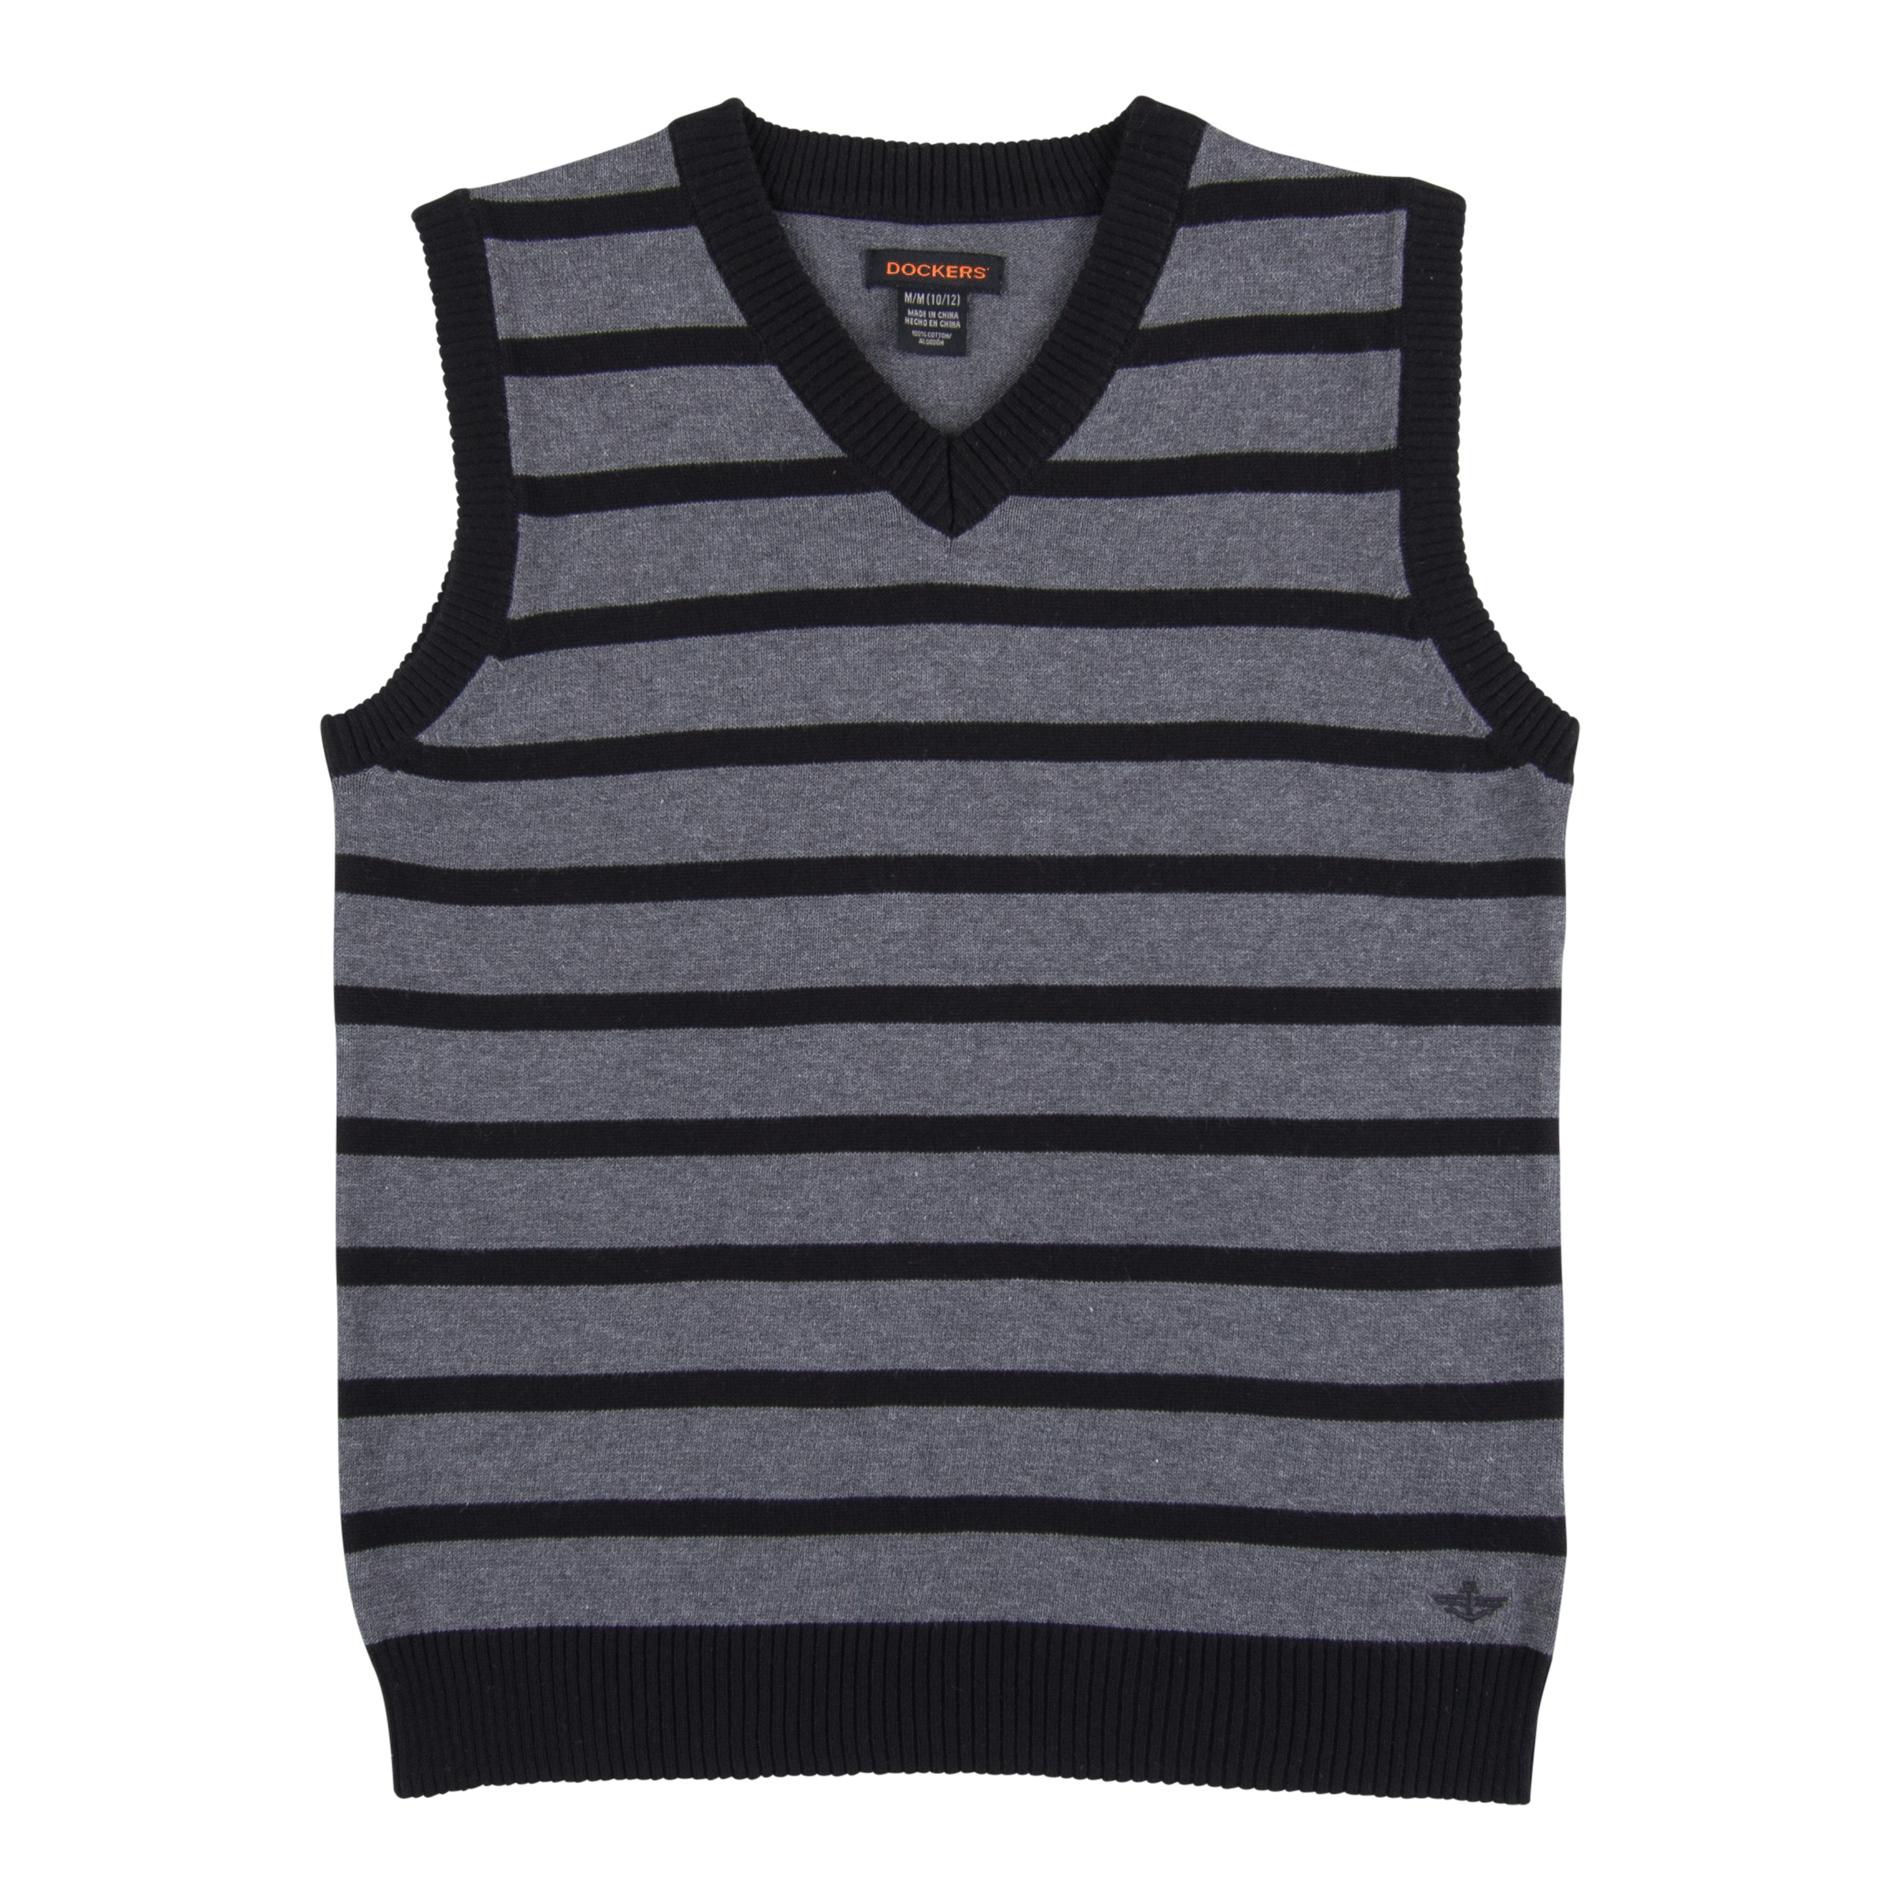 Dockers Boys' Sweater Vest - Striped